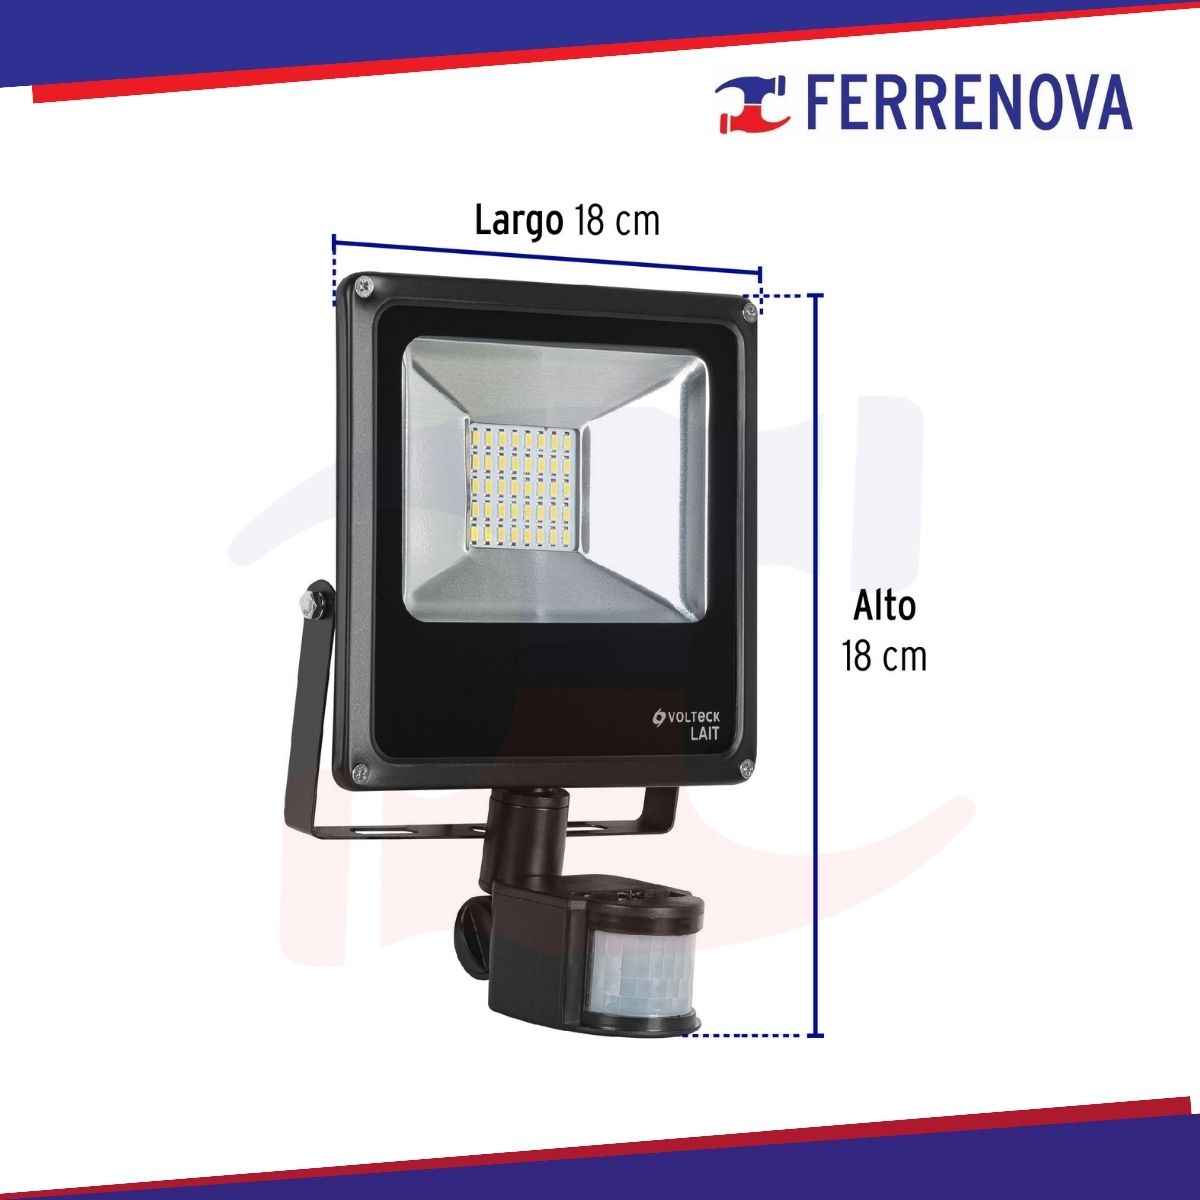 Reflector LED 20 W alta intensidad con sensor de movimiento Volteck 48229